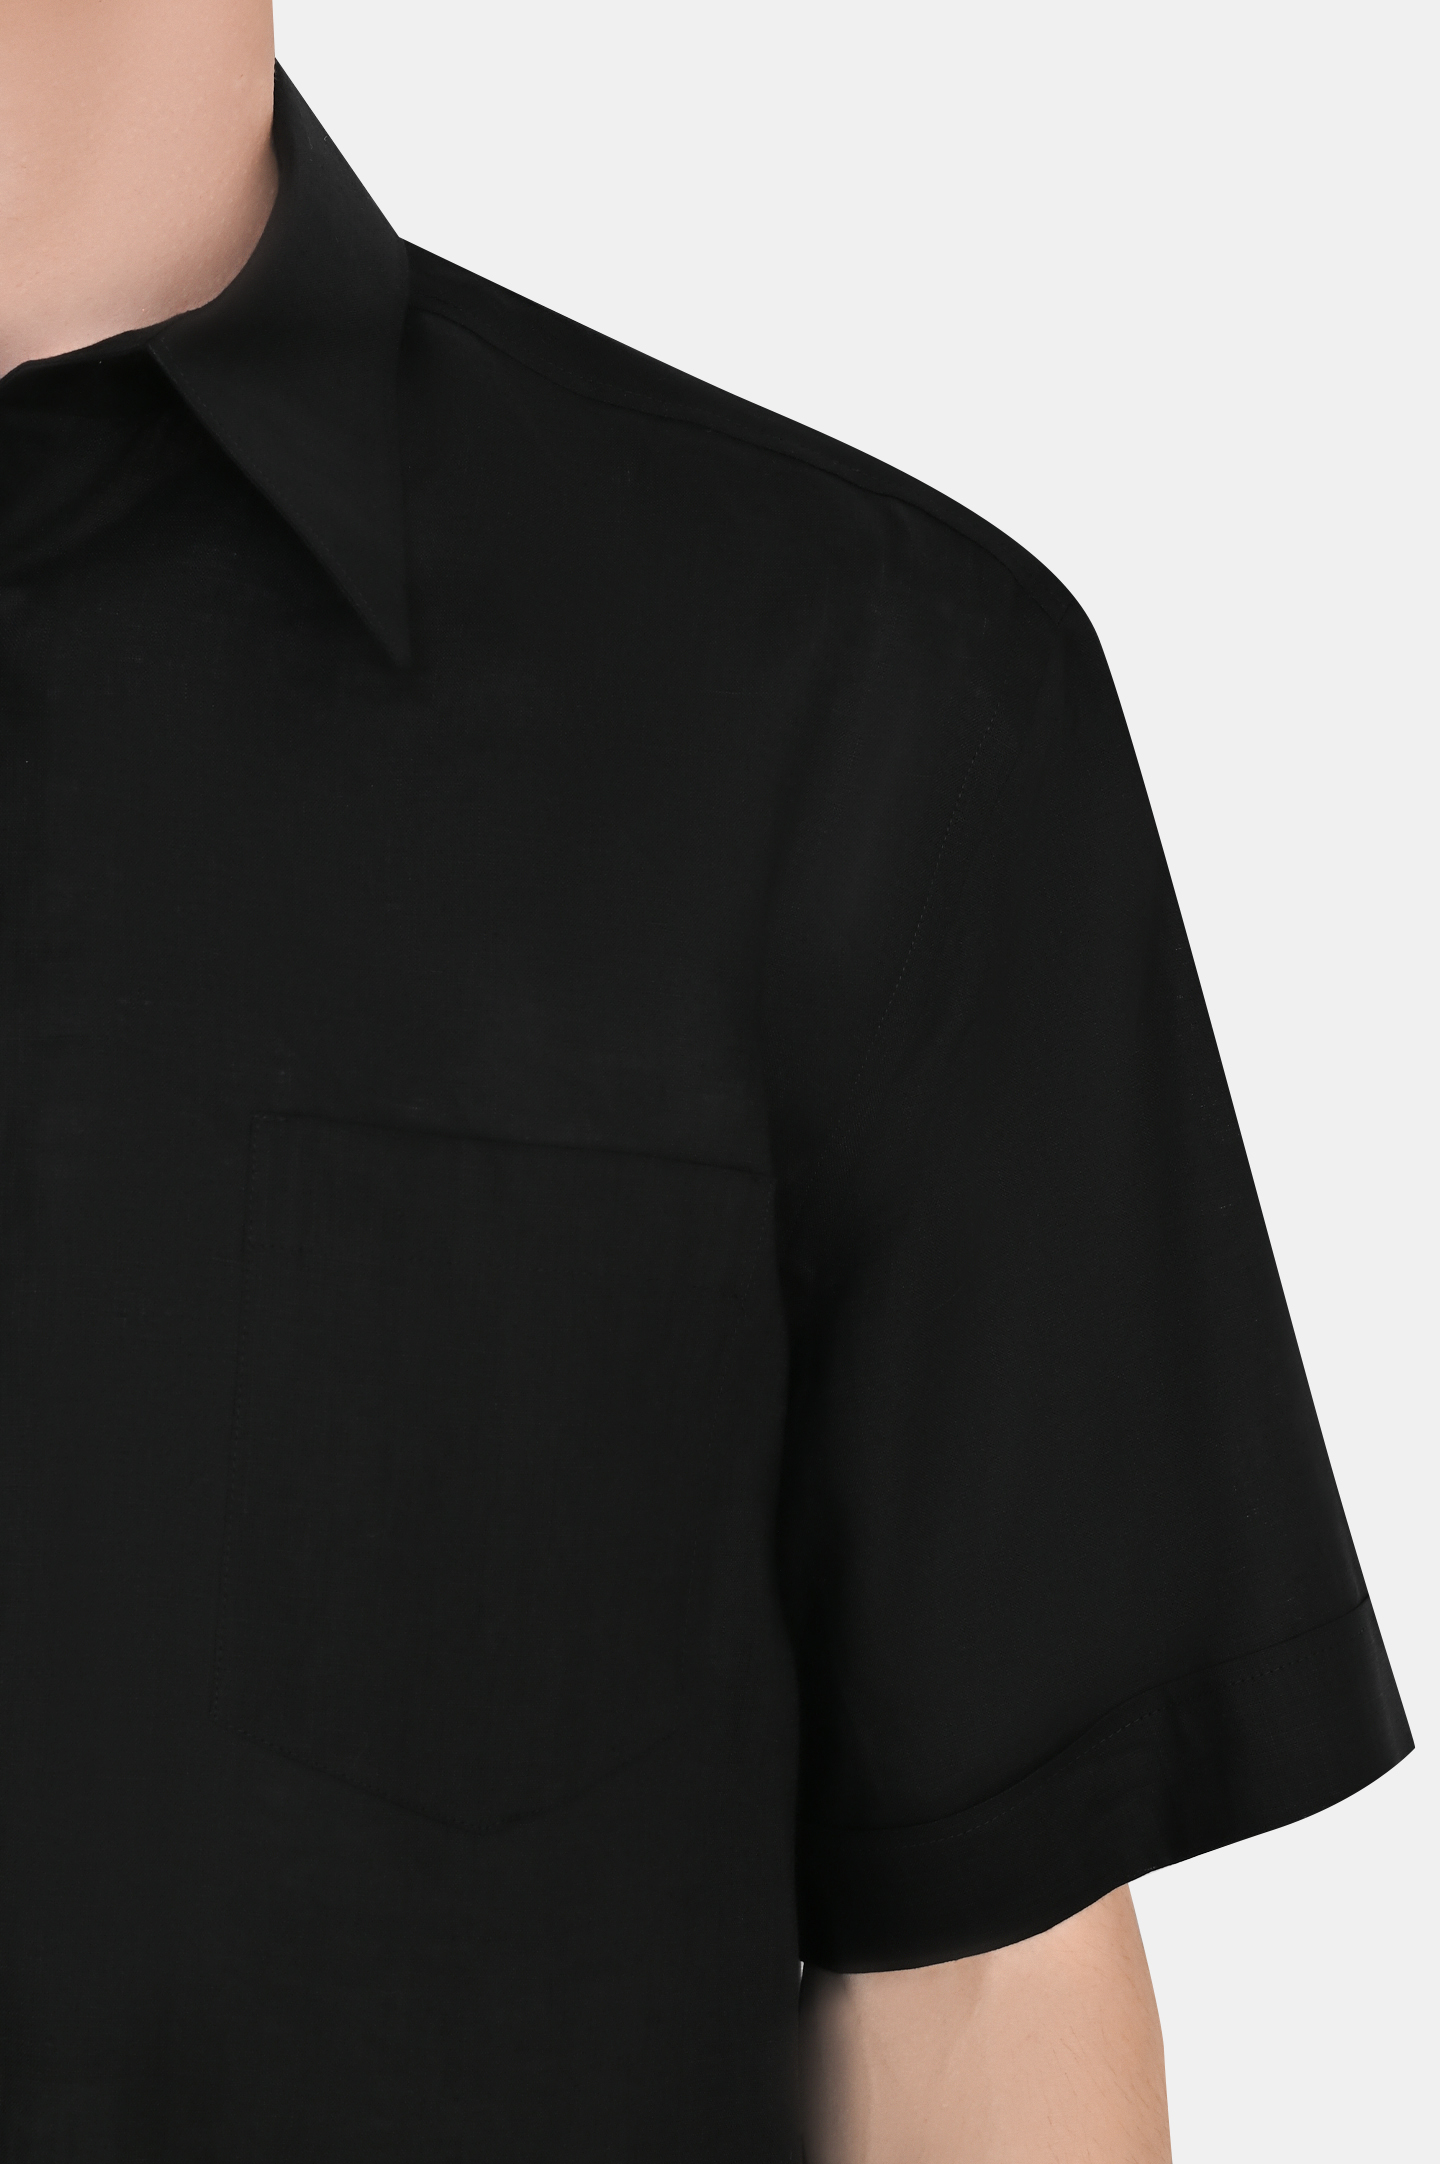 Рубашка DOLCE & GABBANA G5KE1T FU4IK, цвет: Черный, Мужской